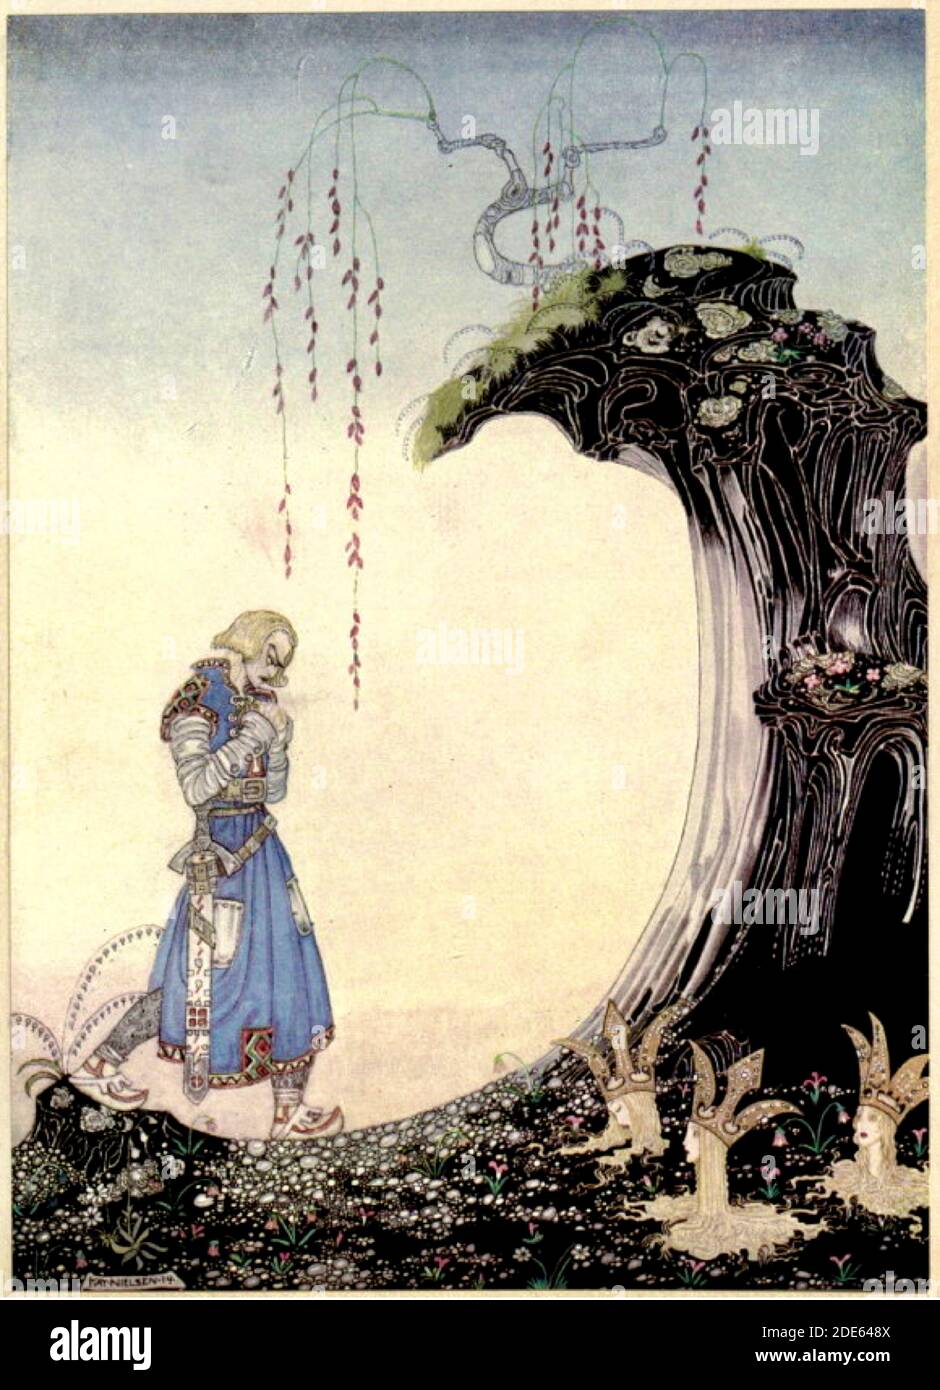 Sie kommen zu drei Prinzessinnen, die Sie in der Erde bis zum Hals stehen sehen, mit nur ihren Köpfen aus - Kay Nielsen Illustration. Stockfoto